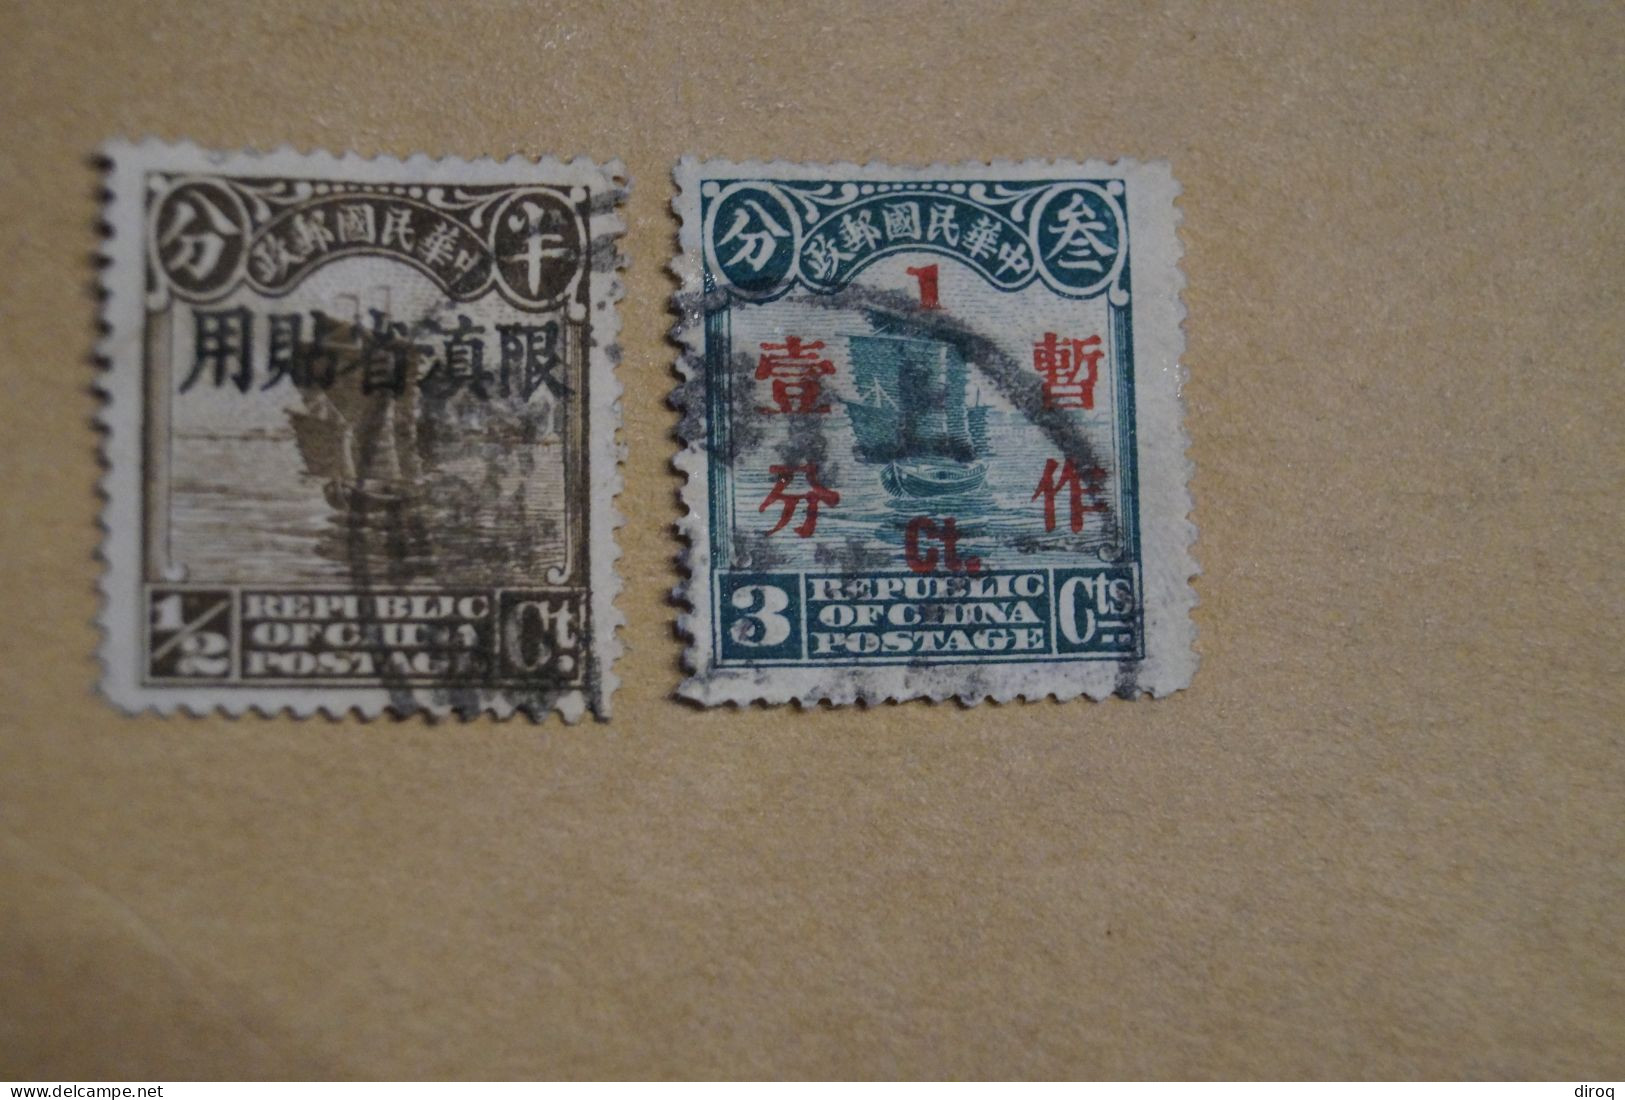 Chine,Chines,lot De 48 Timbres Oblitérés,1913 - 1923,certains Avec Surcharges, Pour Collection,collector - 1912-1949 République